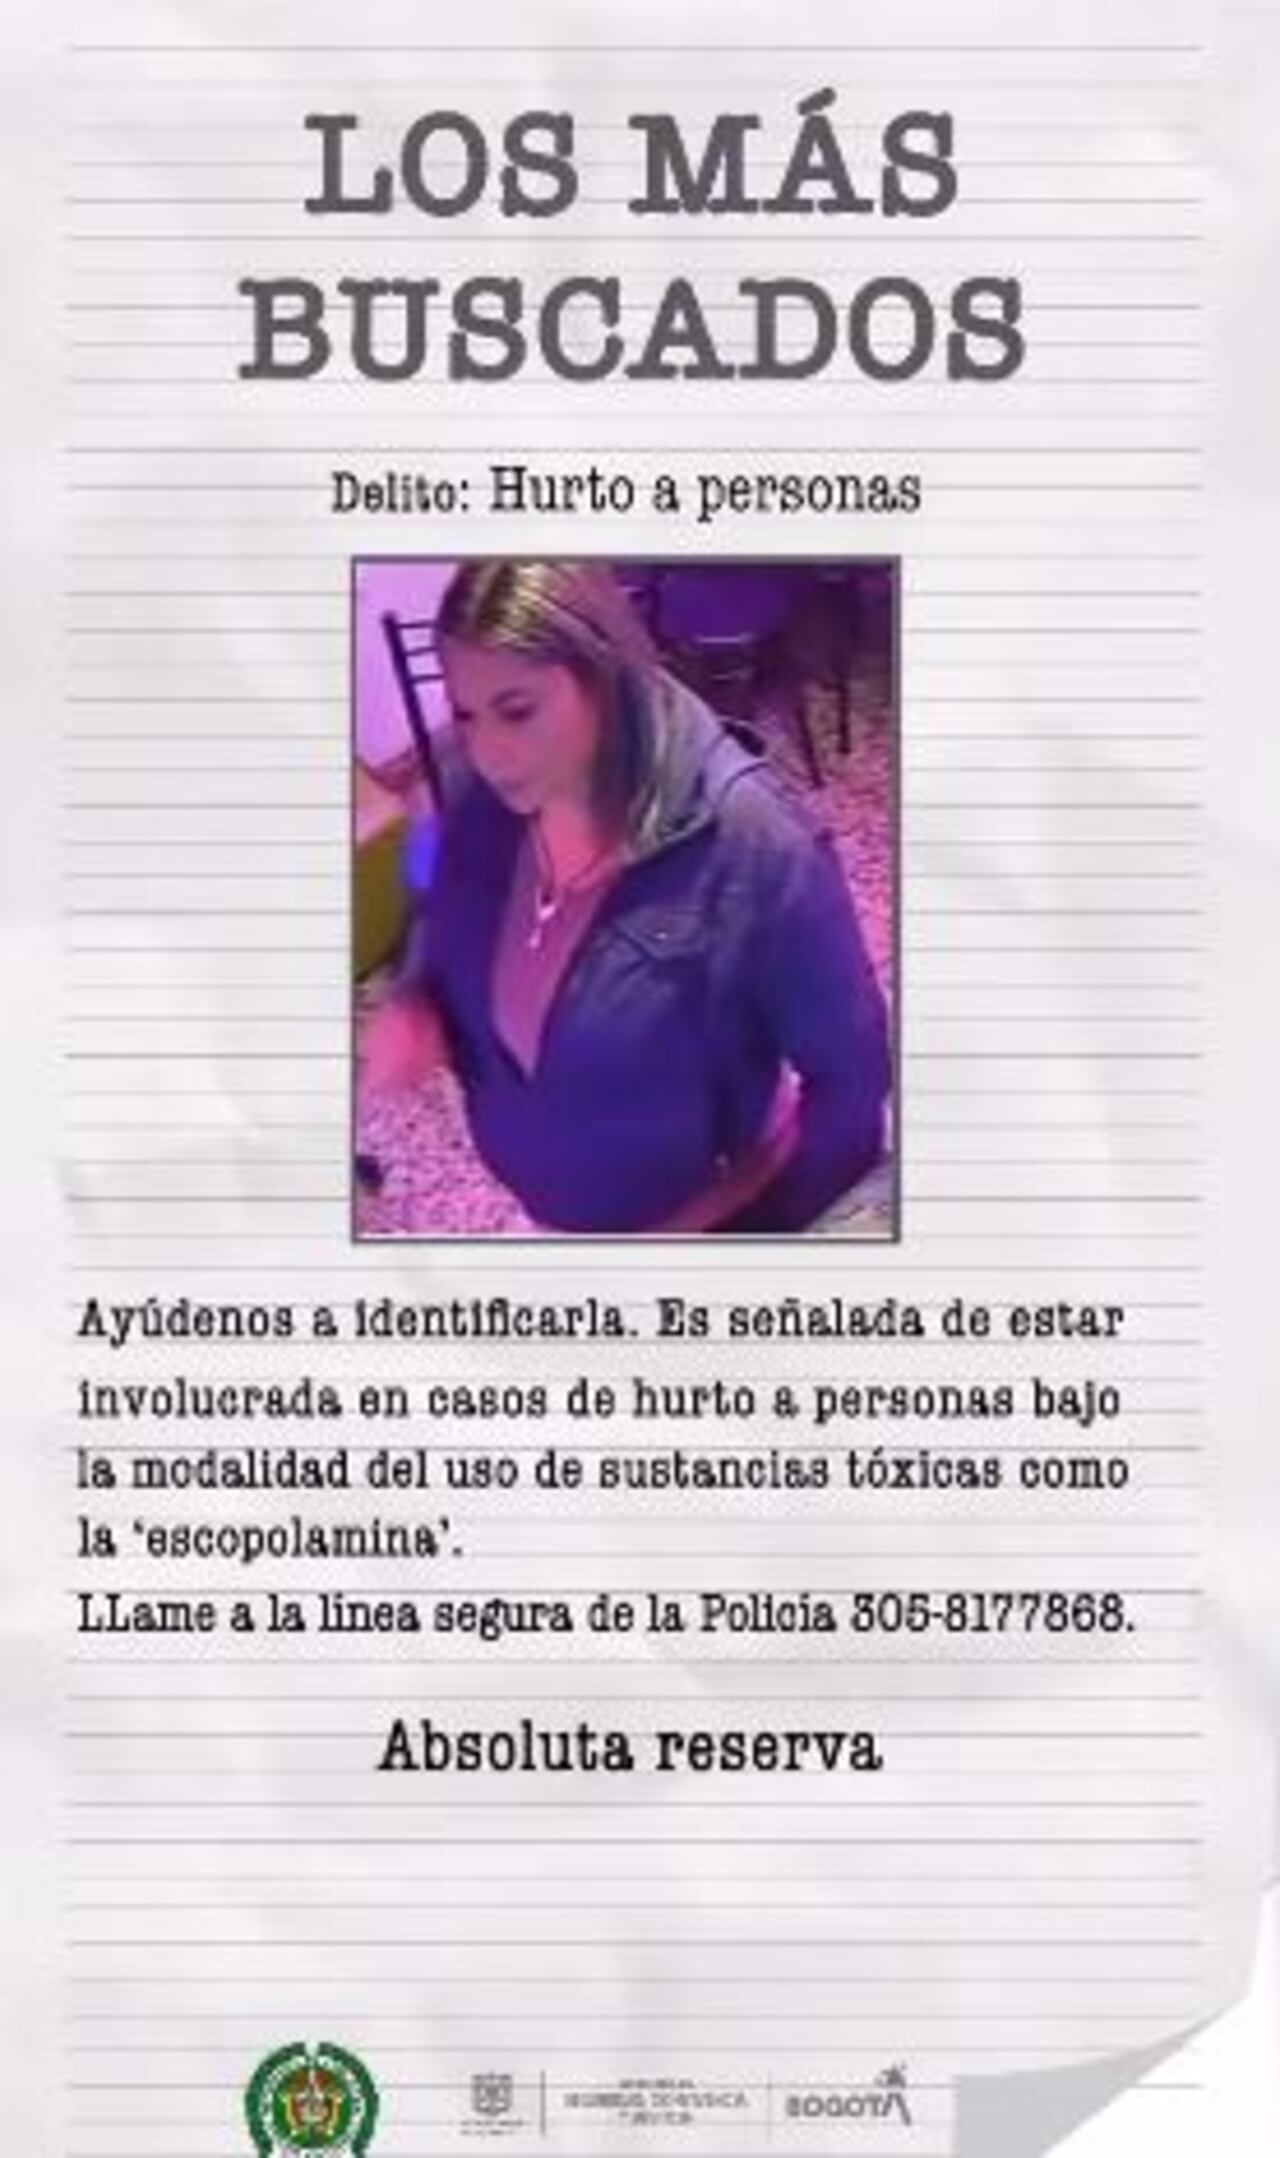 Este es una de las mujeres más buscadas en Bogotá. Es señalada de usar escopolamina para robar a sus víctimas.